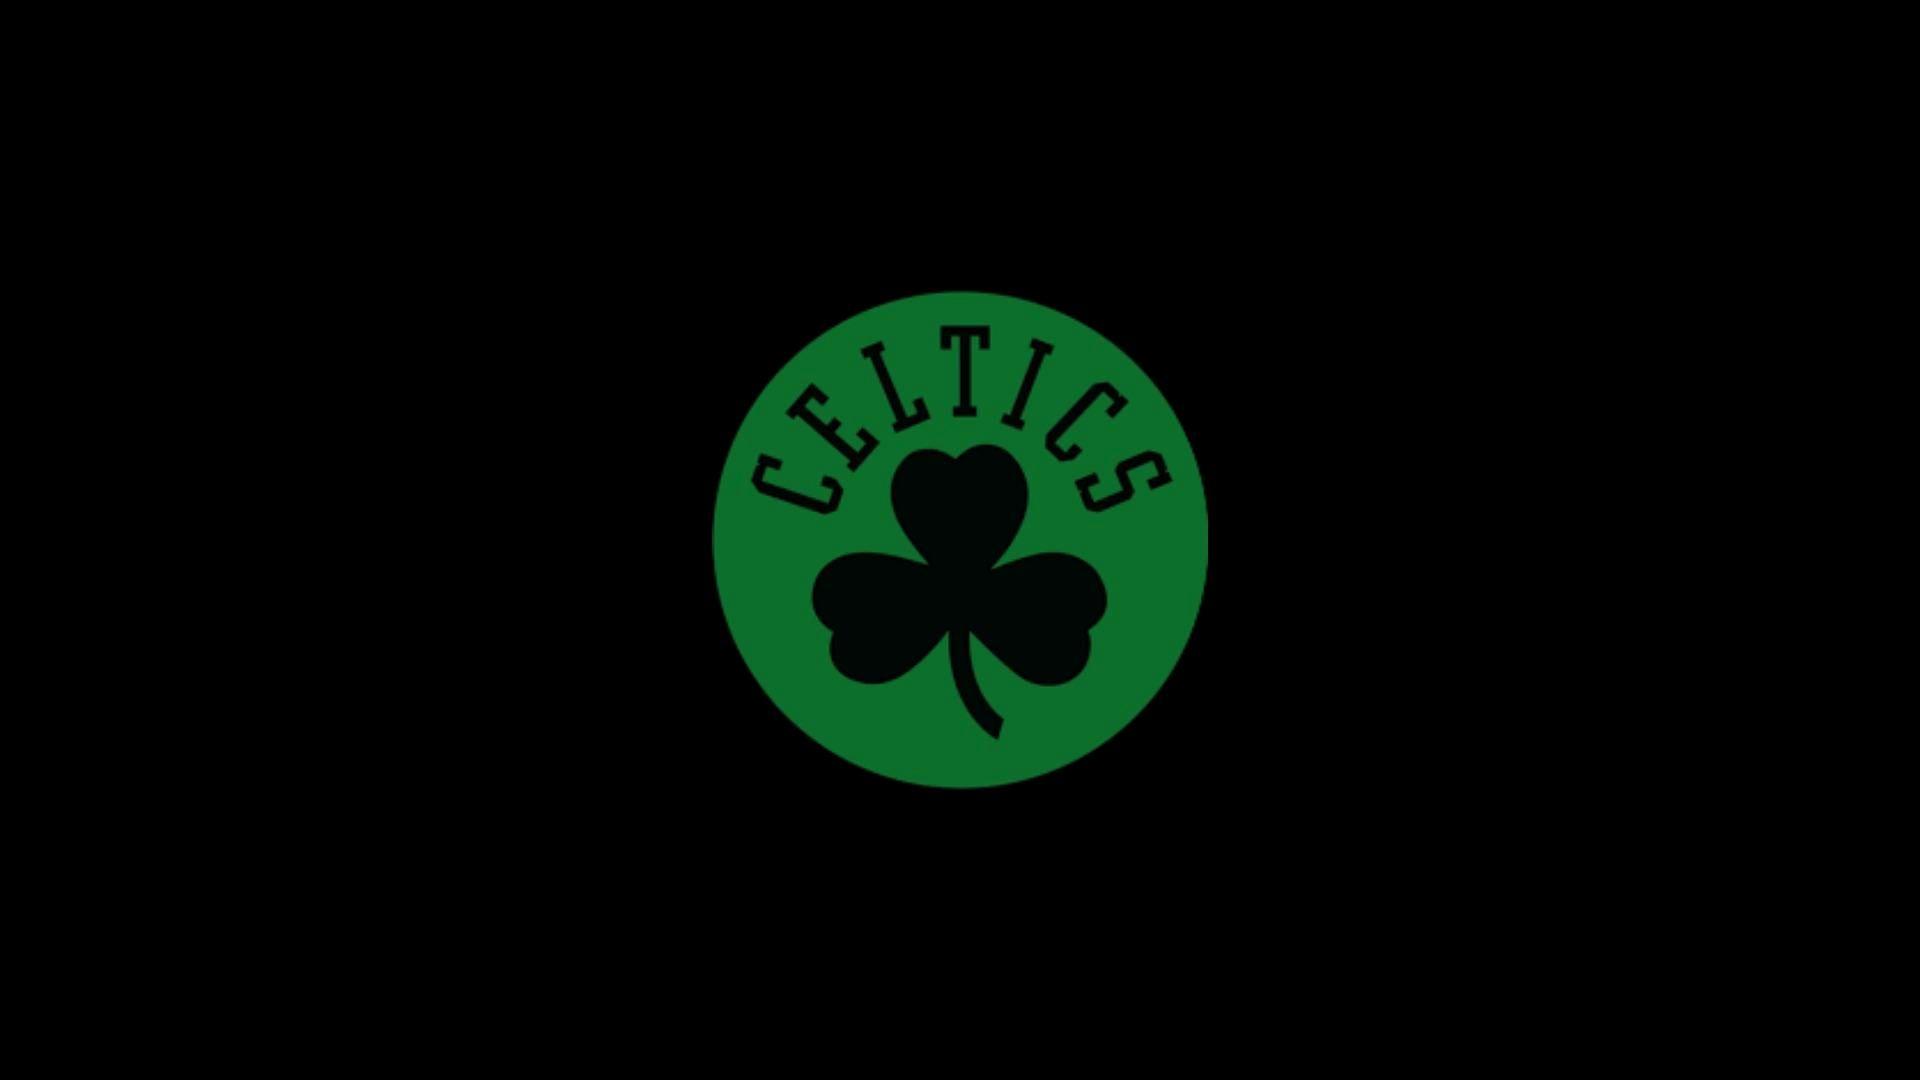 Celtics Wallpapers - Top Free Celtics